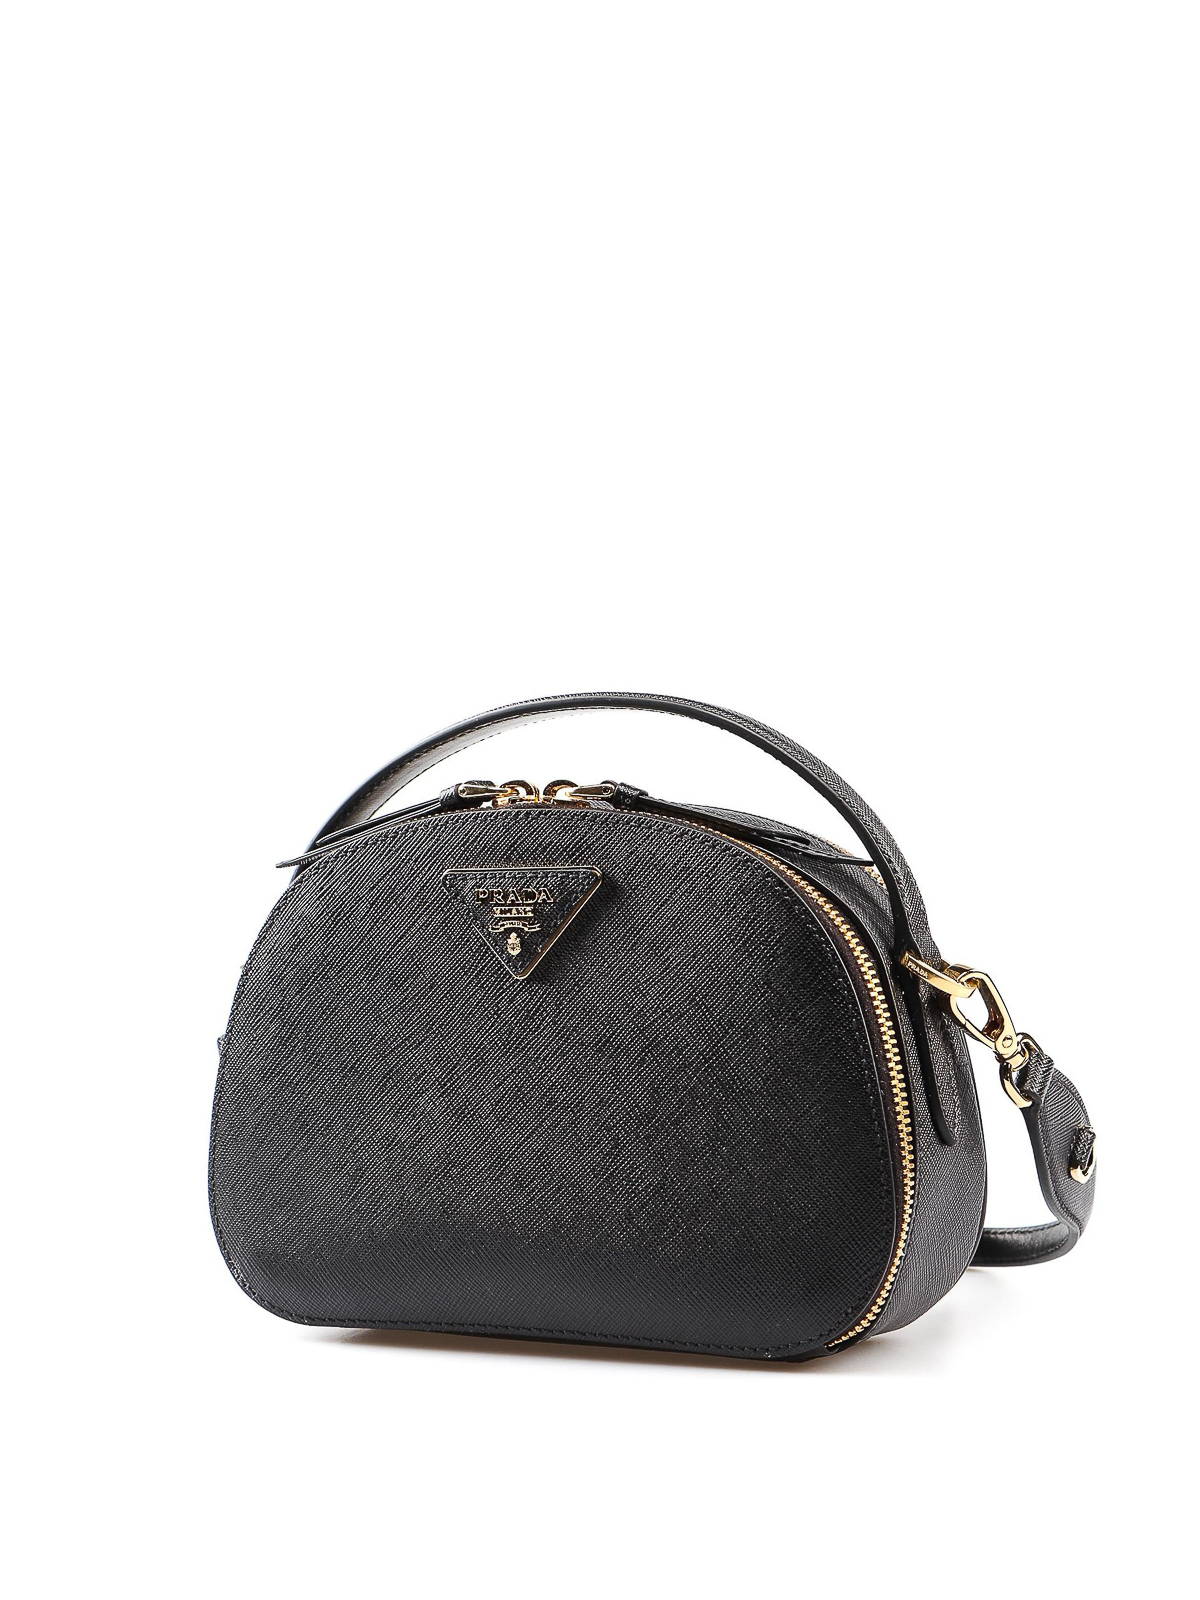 Shoulder bags Prada - Odette black leather handbag - 1BH123NZV002